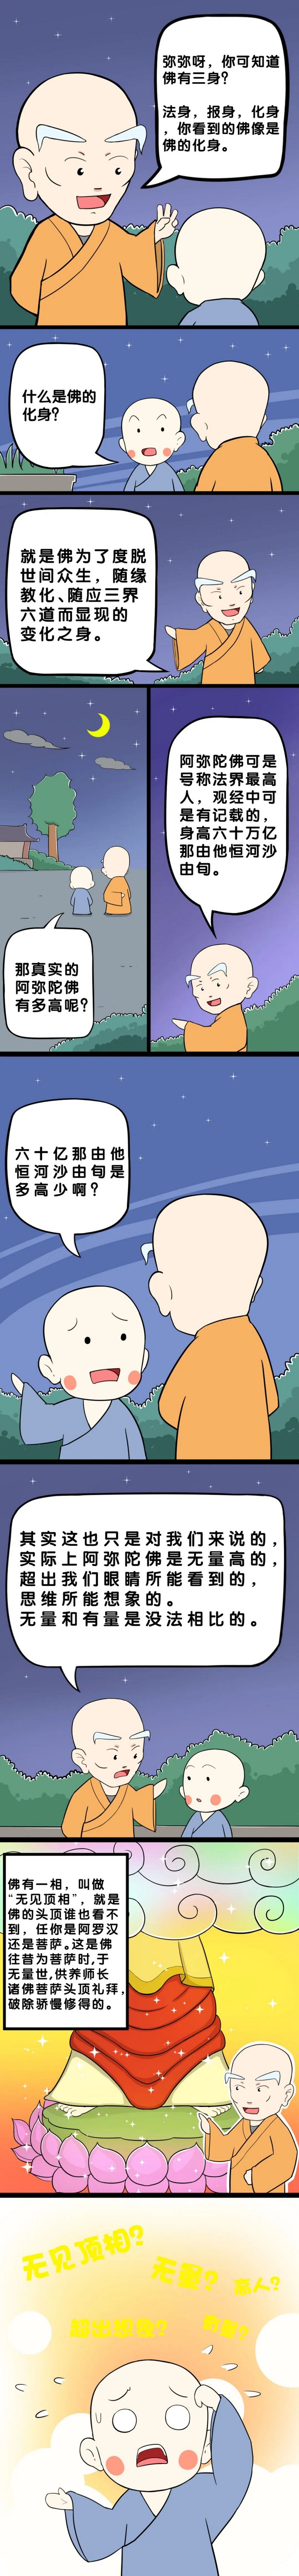 【佛学漫画】法界第一高人